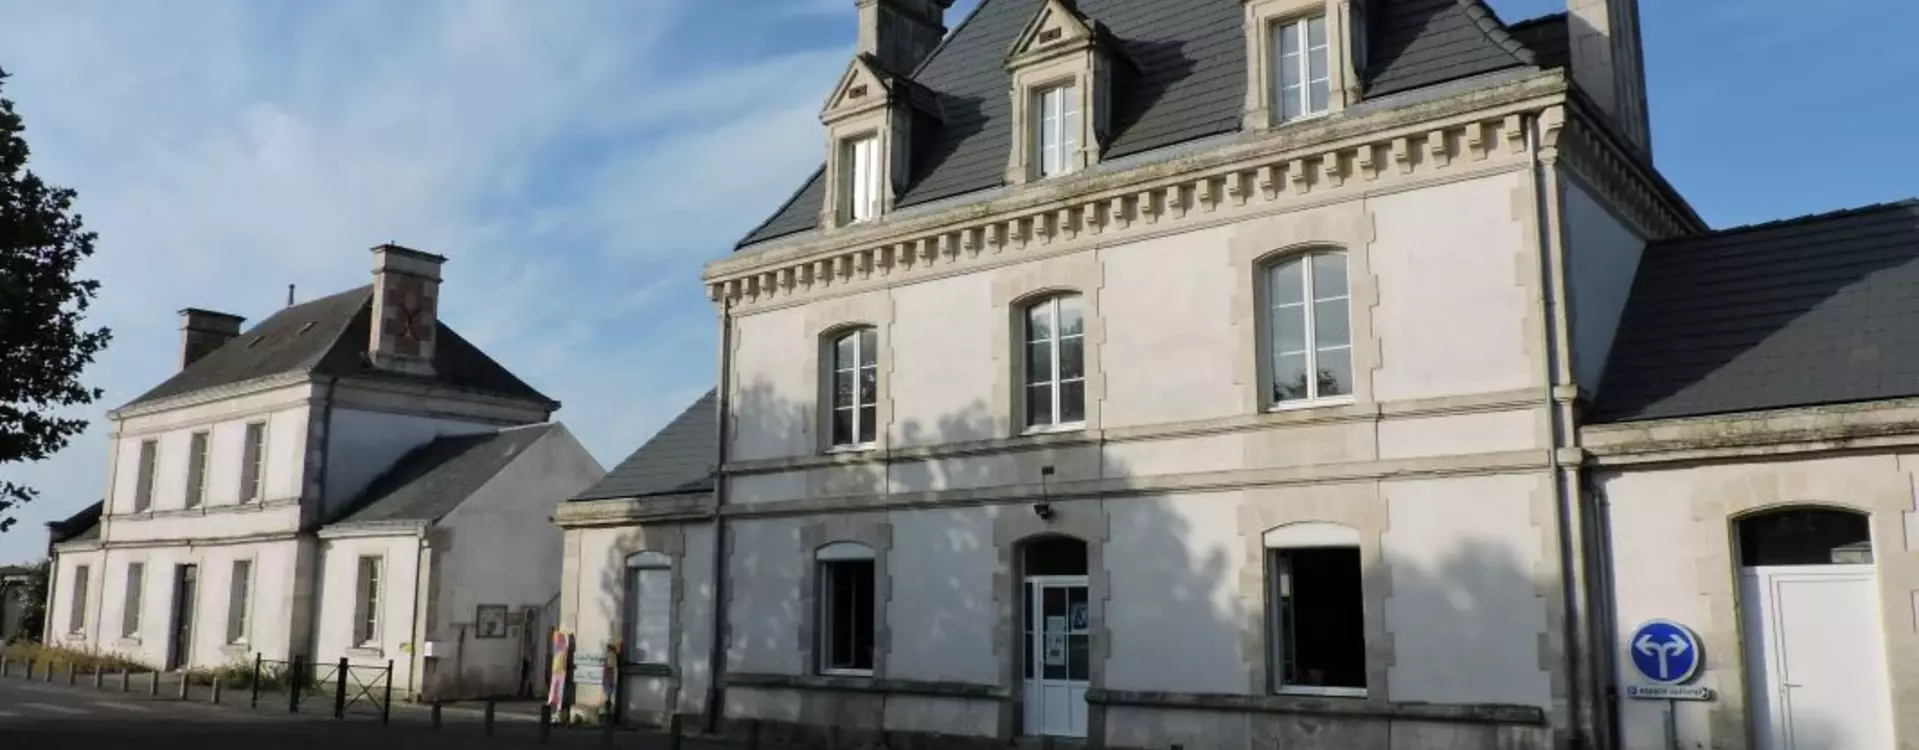 Ecole Publique Gaston Chaissac de la commune de Vix (85) Vendée